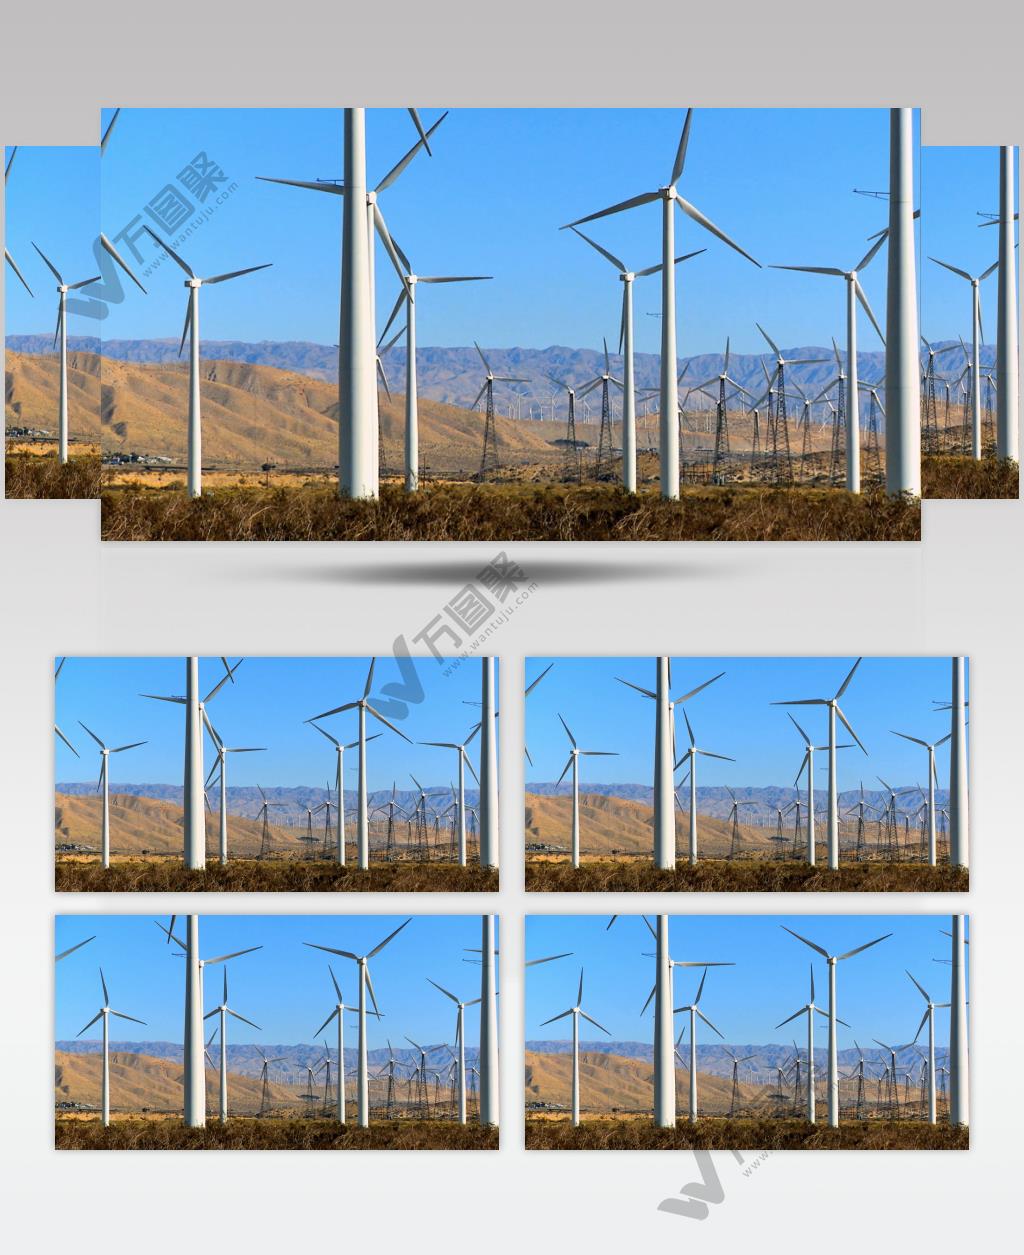 新能源-000727VTXHD 风力发电 工业